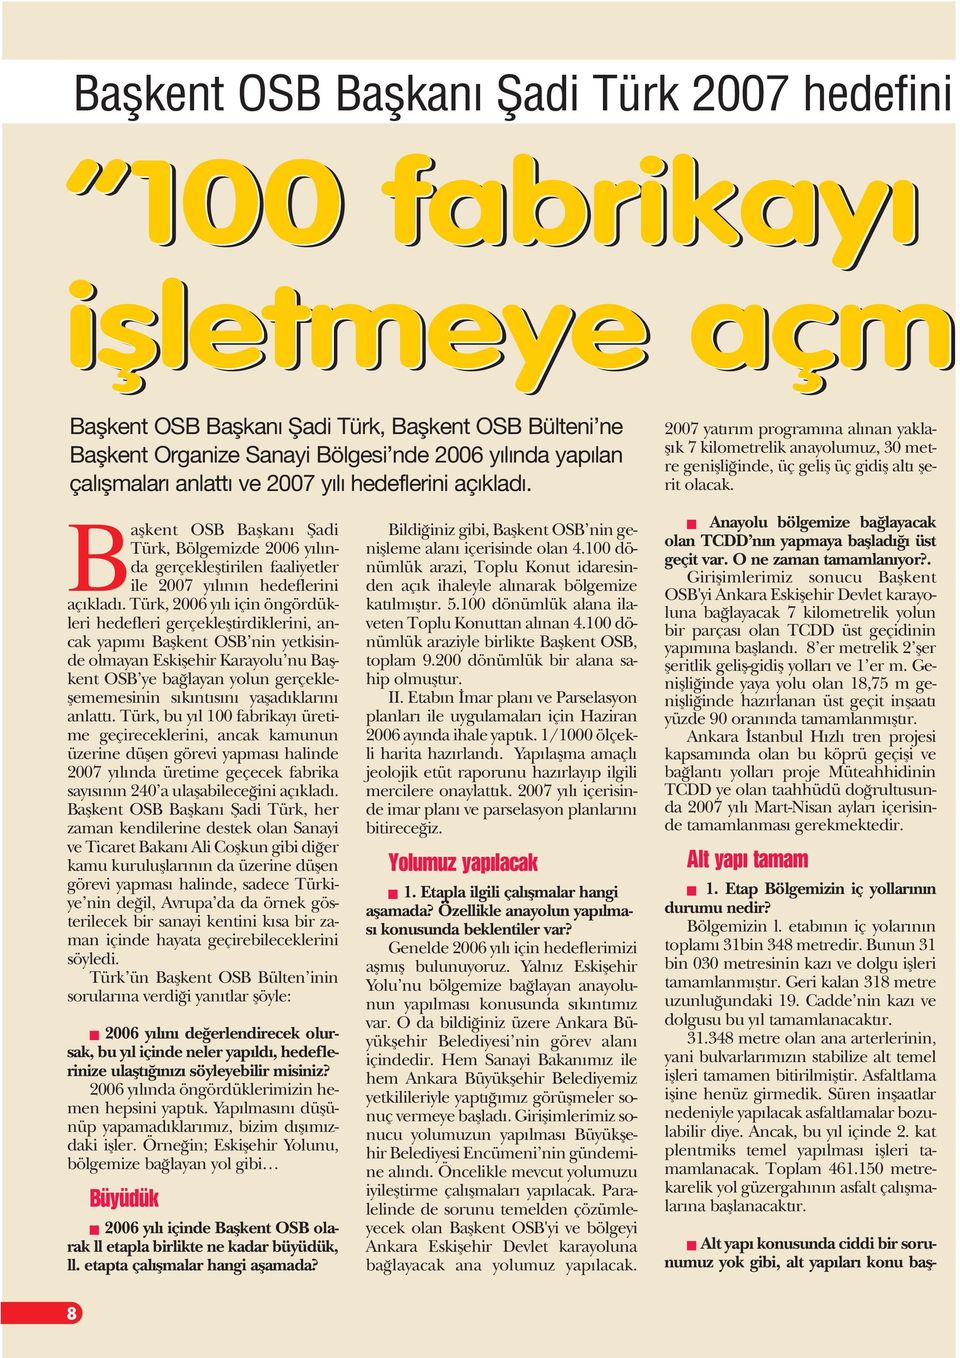 Baflkent OSB Baflkan fiadi Türk, Bölgemizde 2006 y l nda gerçeklefltirilen faaliyetler ile 2007 y l n n hedeflerini aç klad.